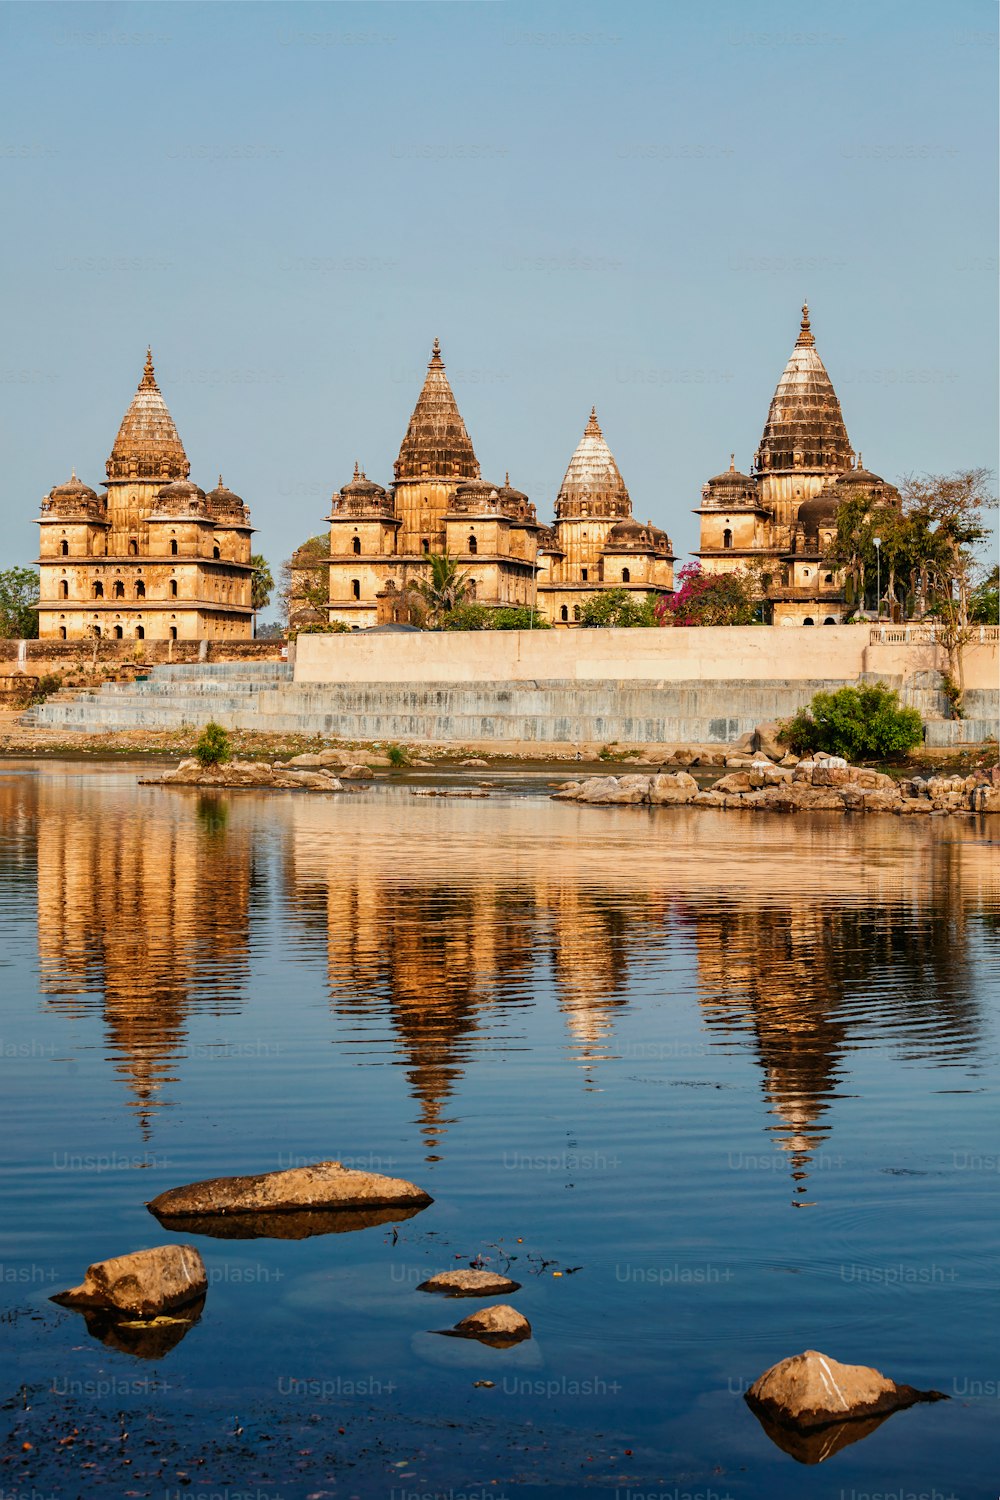 Punto di riferimento indiano turistico - vista dei cenotafi reali di Orchha sul fiume Betwa. Orchha, Madhya Pradesh, India